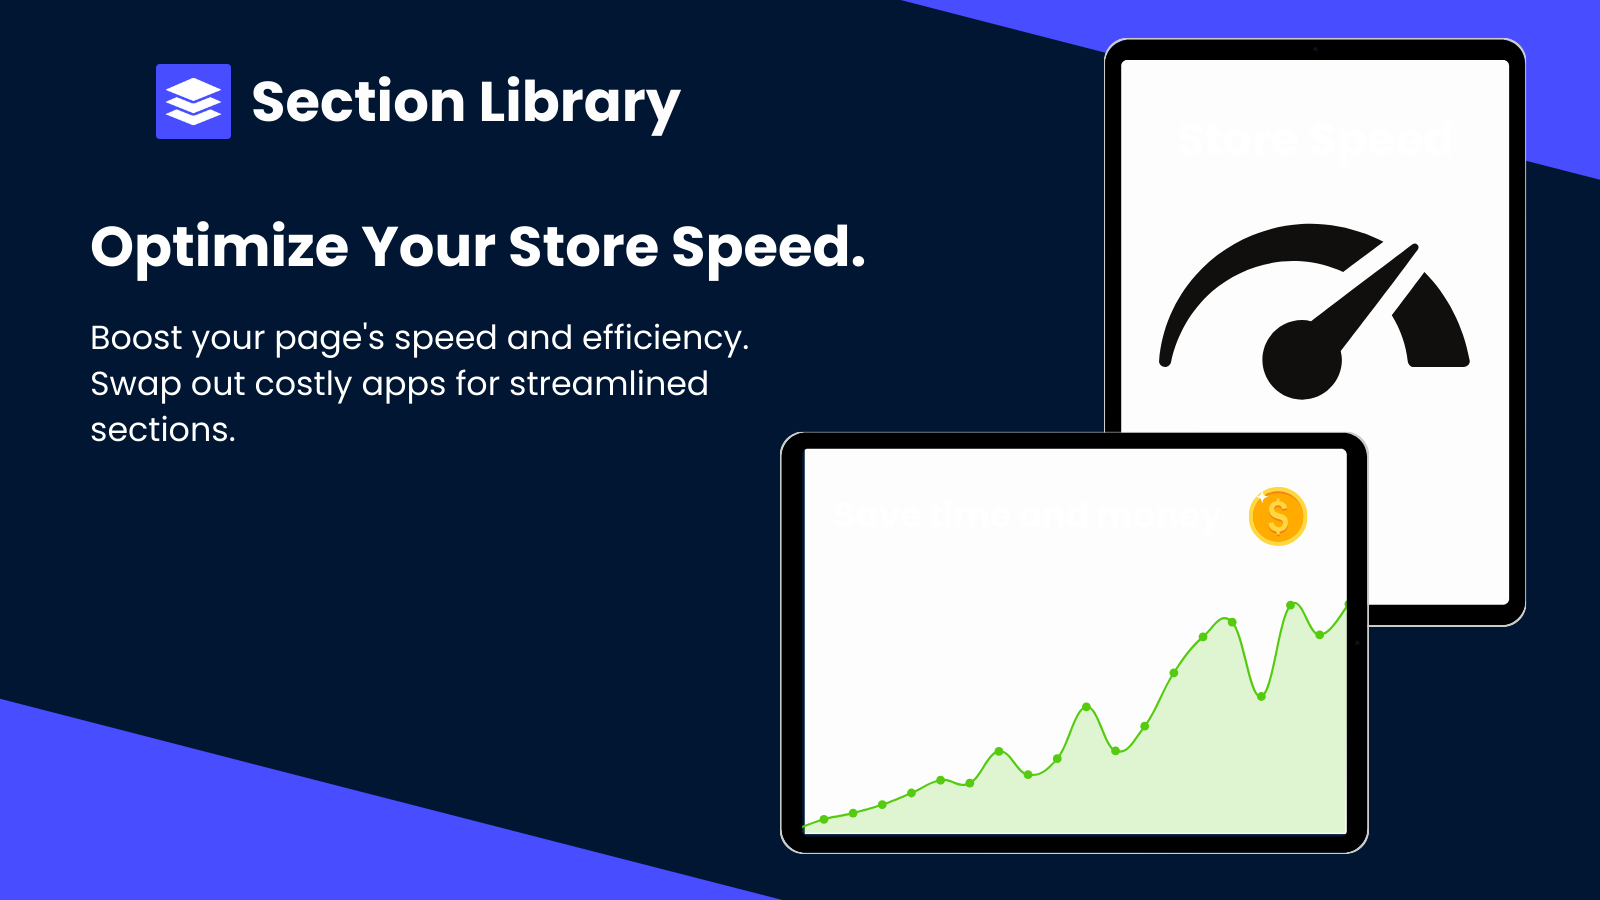 Eine Erklärung, wie die App die Geschwindigkeit des Shops verbessern kann